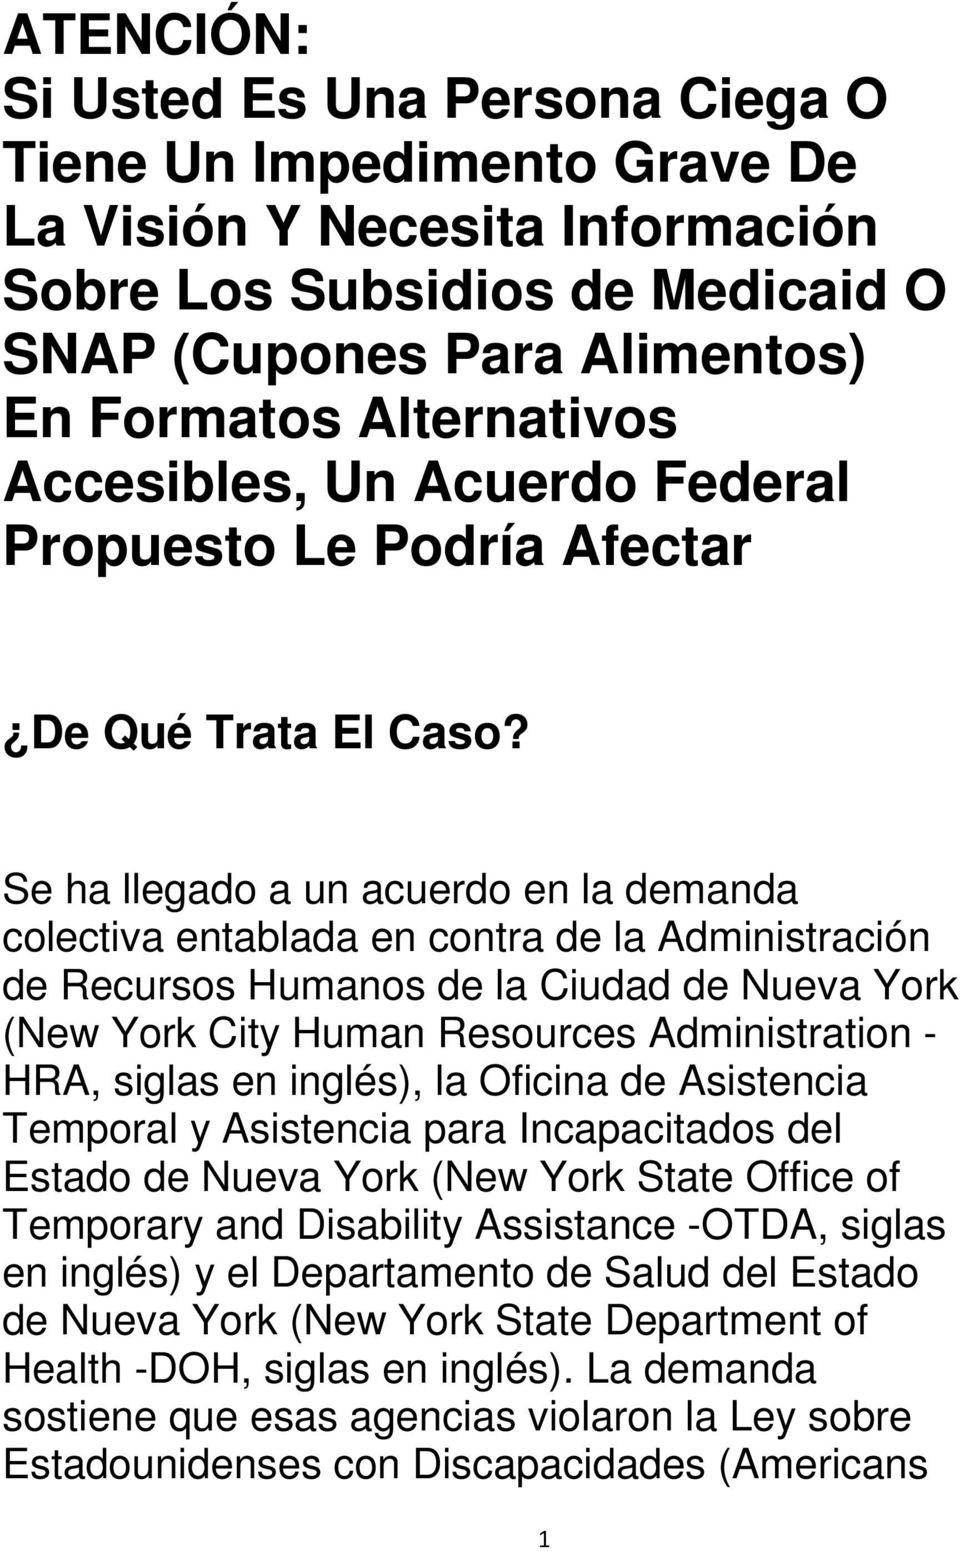 Se ha llegado a un acuerdo en la demanda colectiva entablada en contra de la Administración de Recursos Humanos de la Ciudad de Nueva York (New York City Human Resources Administration - HRA, siglas